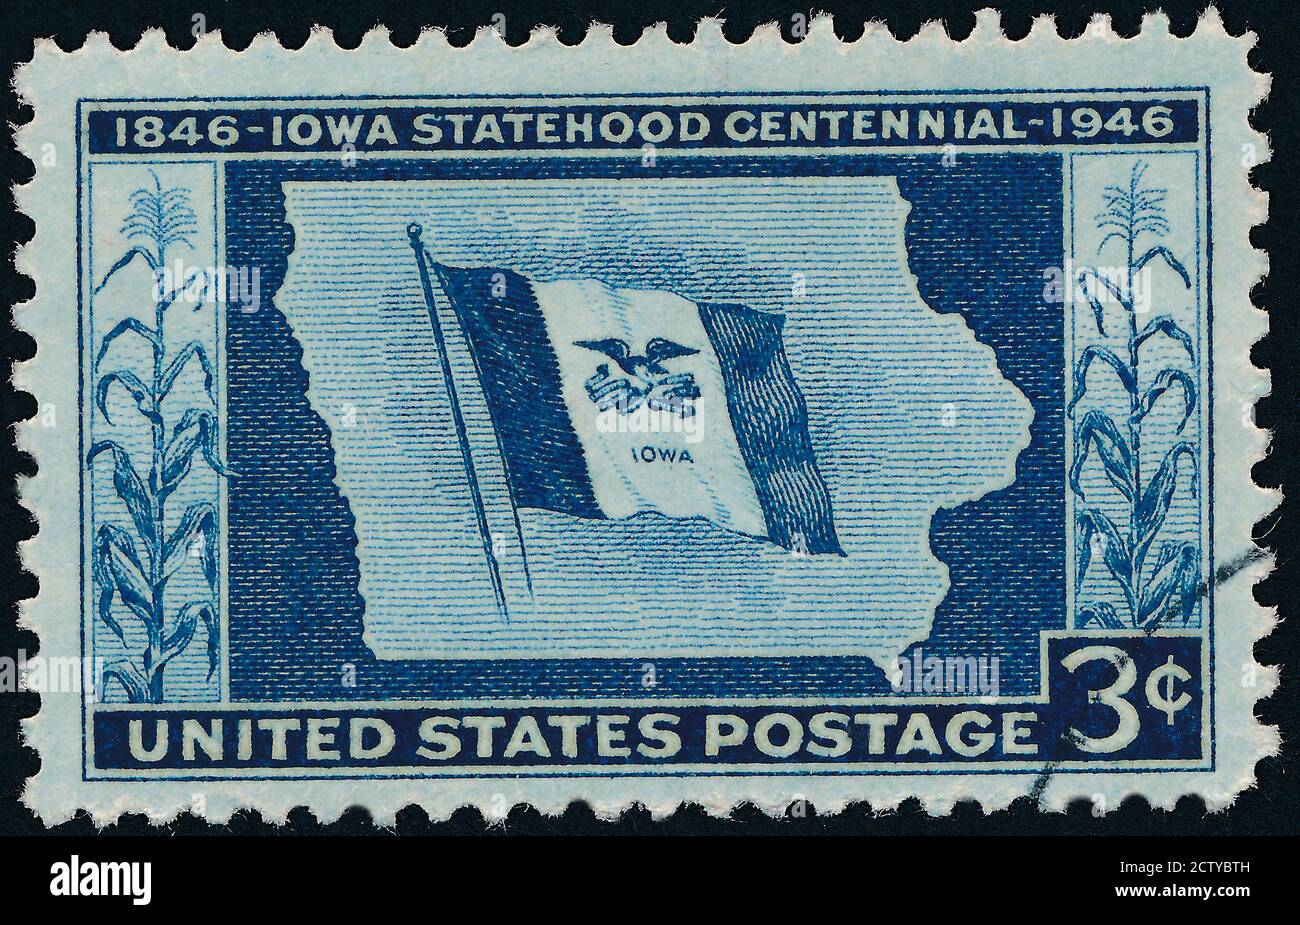 Iowa Statehood Stock photo Karte, Iowa, USA, Briefmarke, Monochrom, EINE Briefmarke gedruckt in USA gewidmet Iowa Statehood Centenary, um 1946 Stockfoto